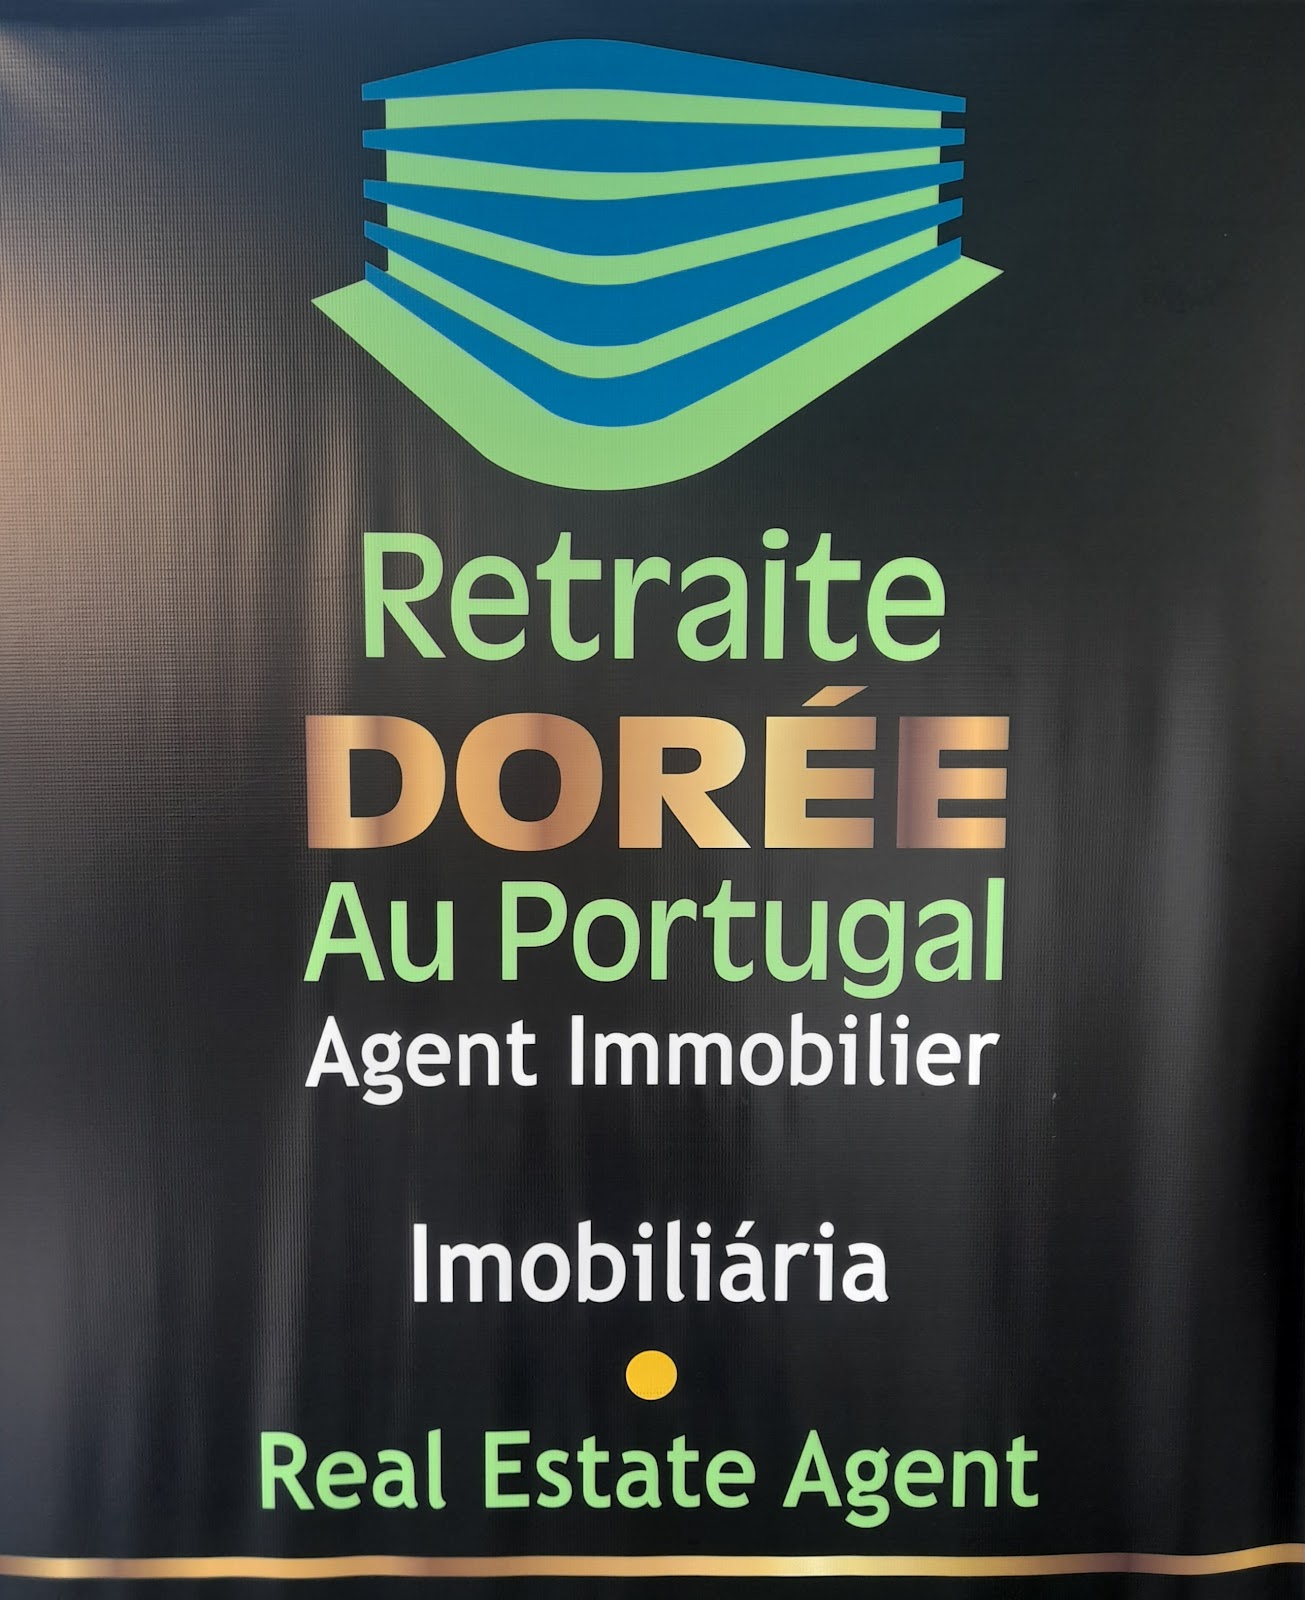  PalSul-Grupo Retraite Doreé Au Portugal